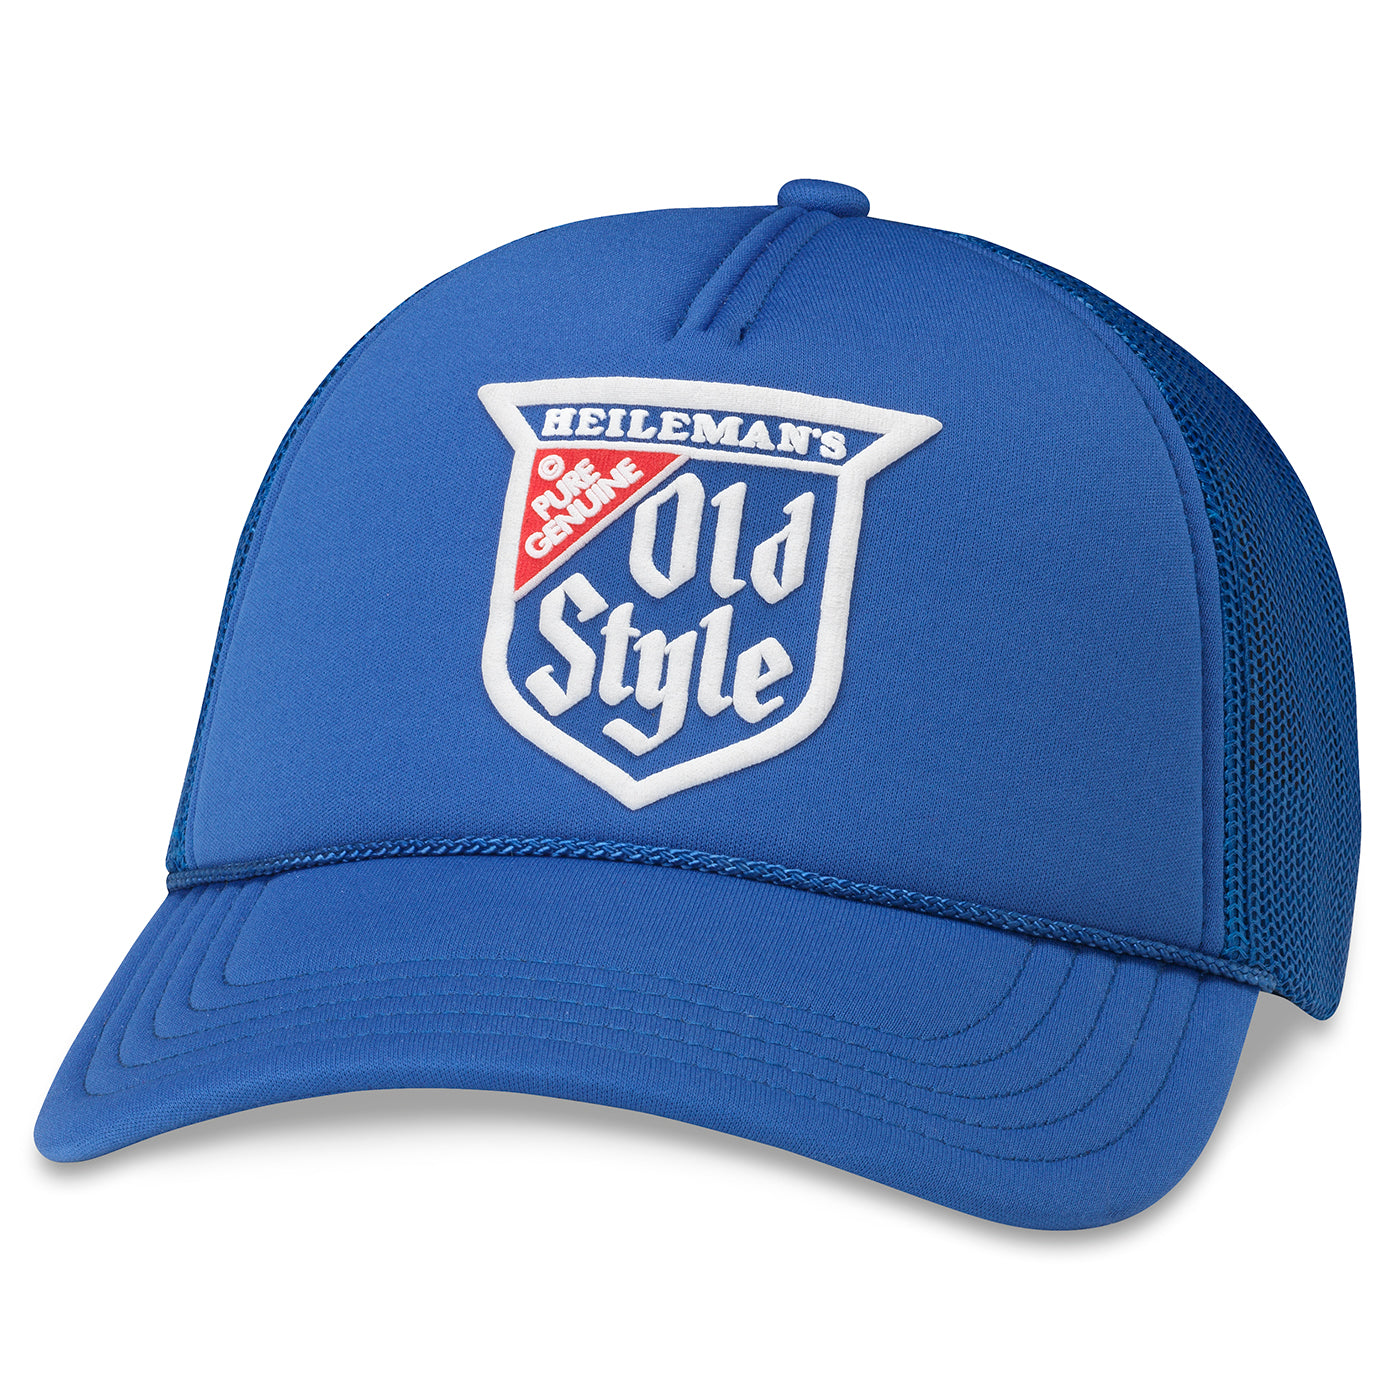 Old Style Meshback Adjustable Hat